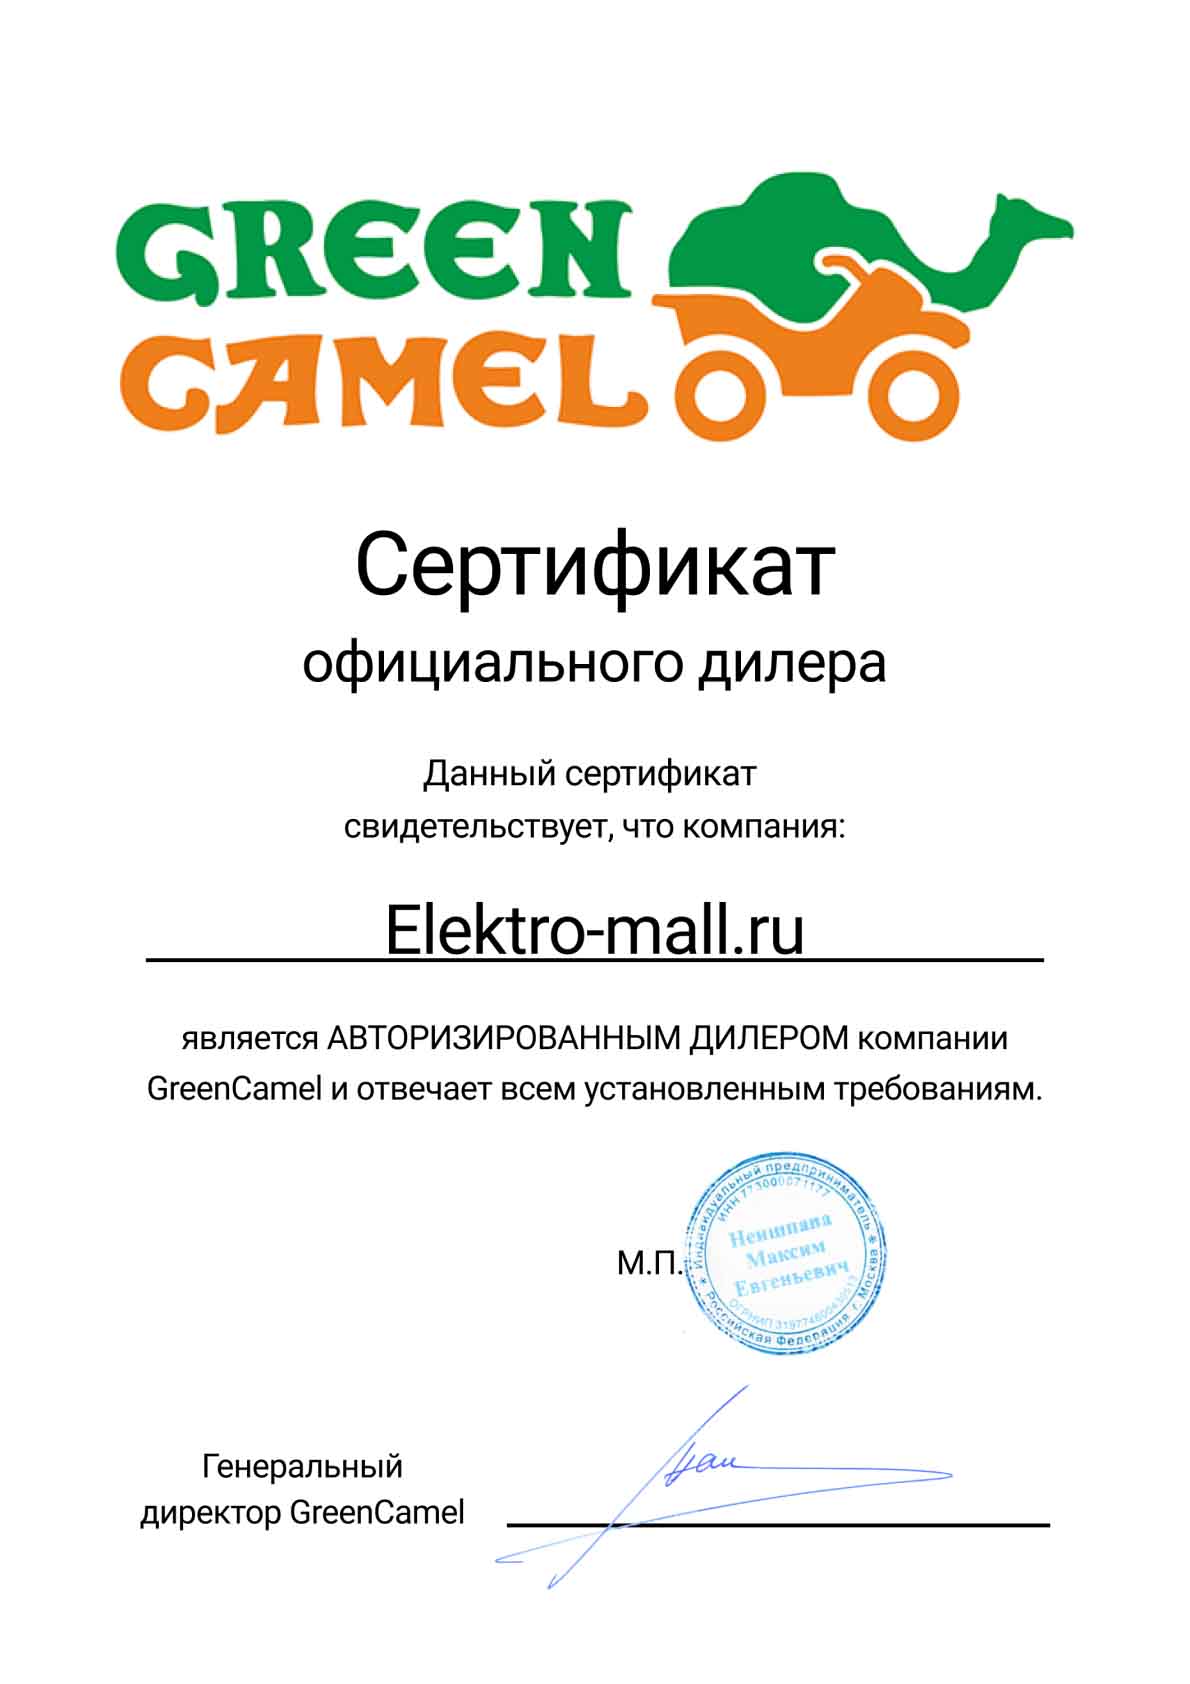 Сертификат GreenCamel